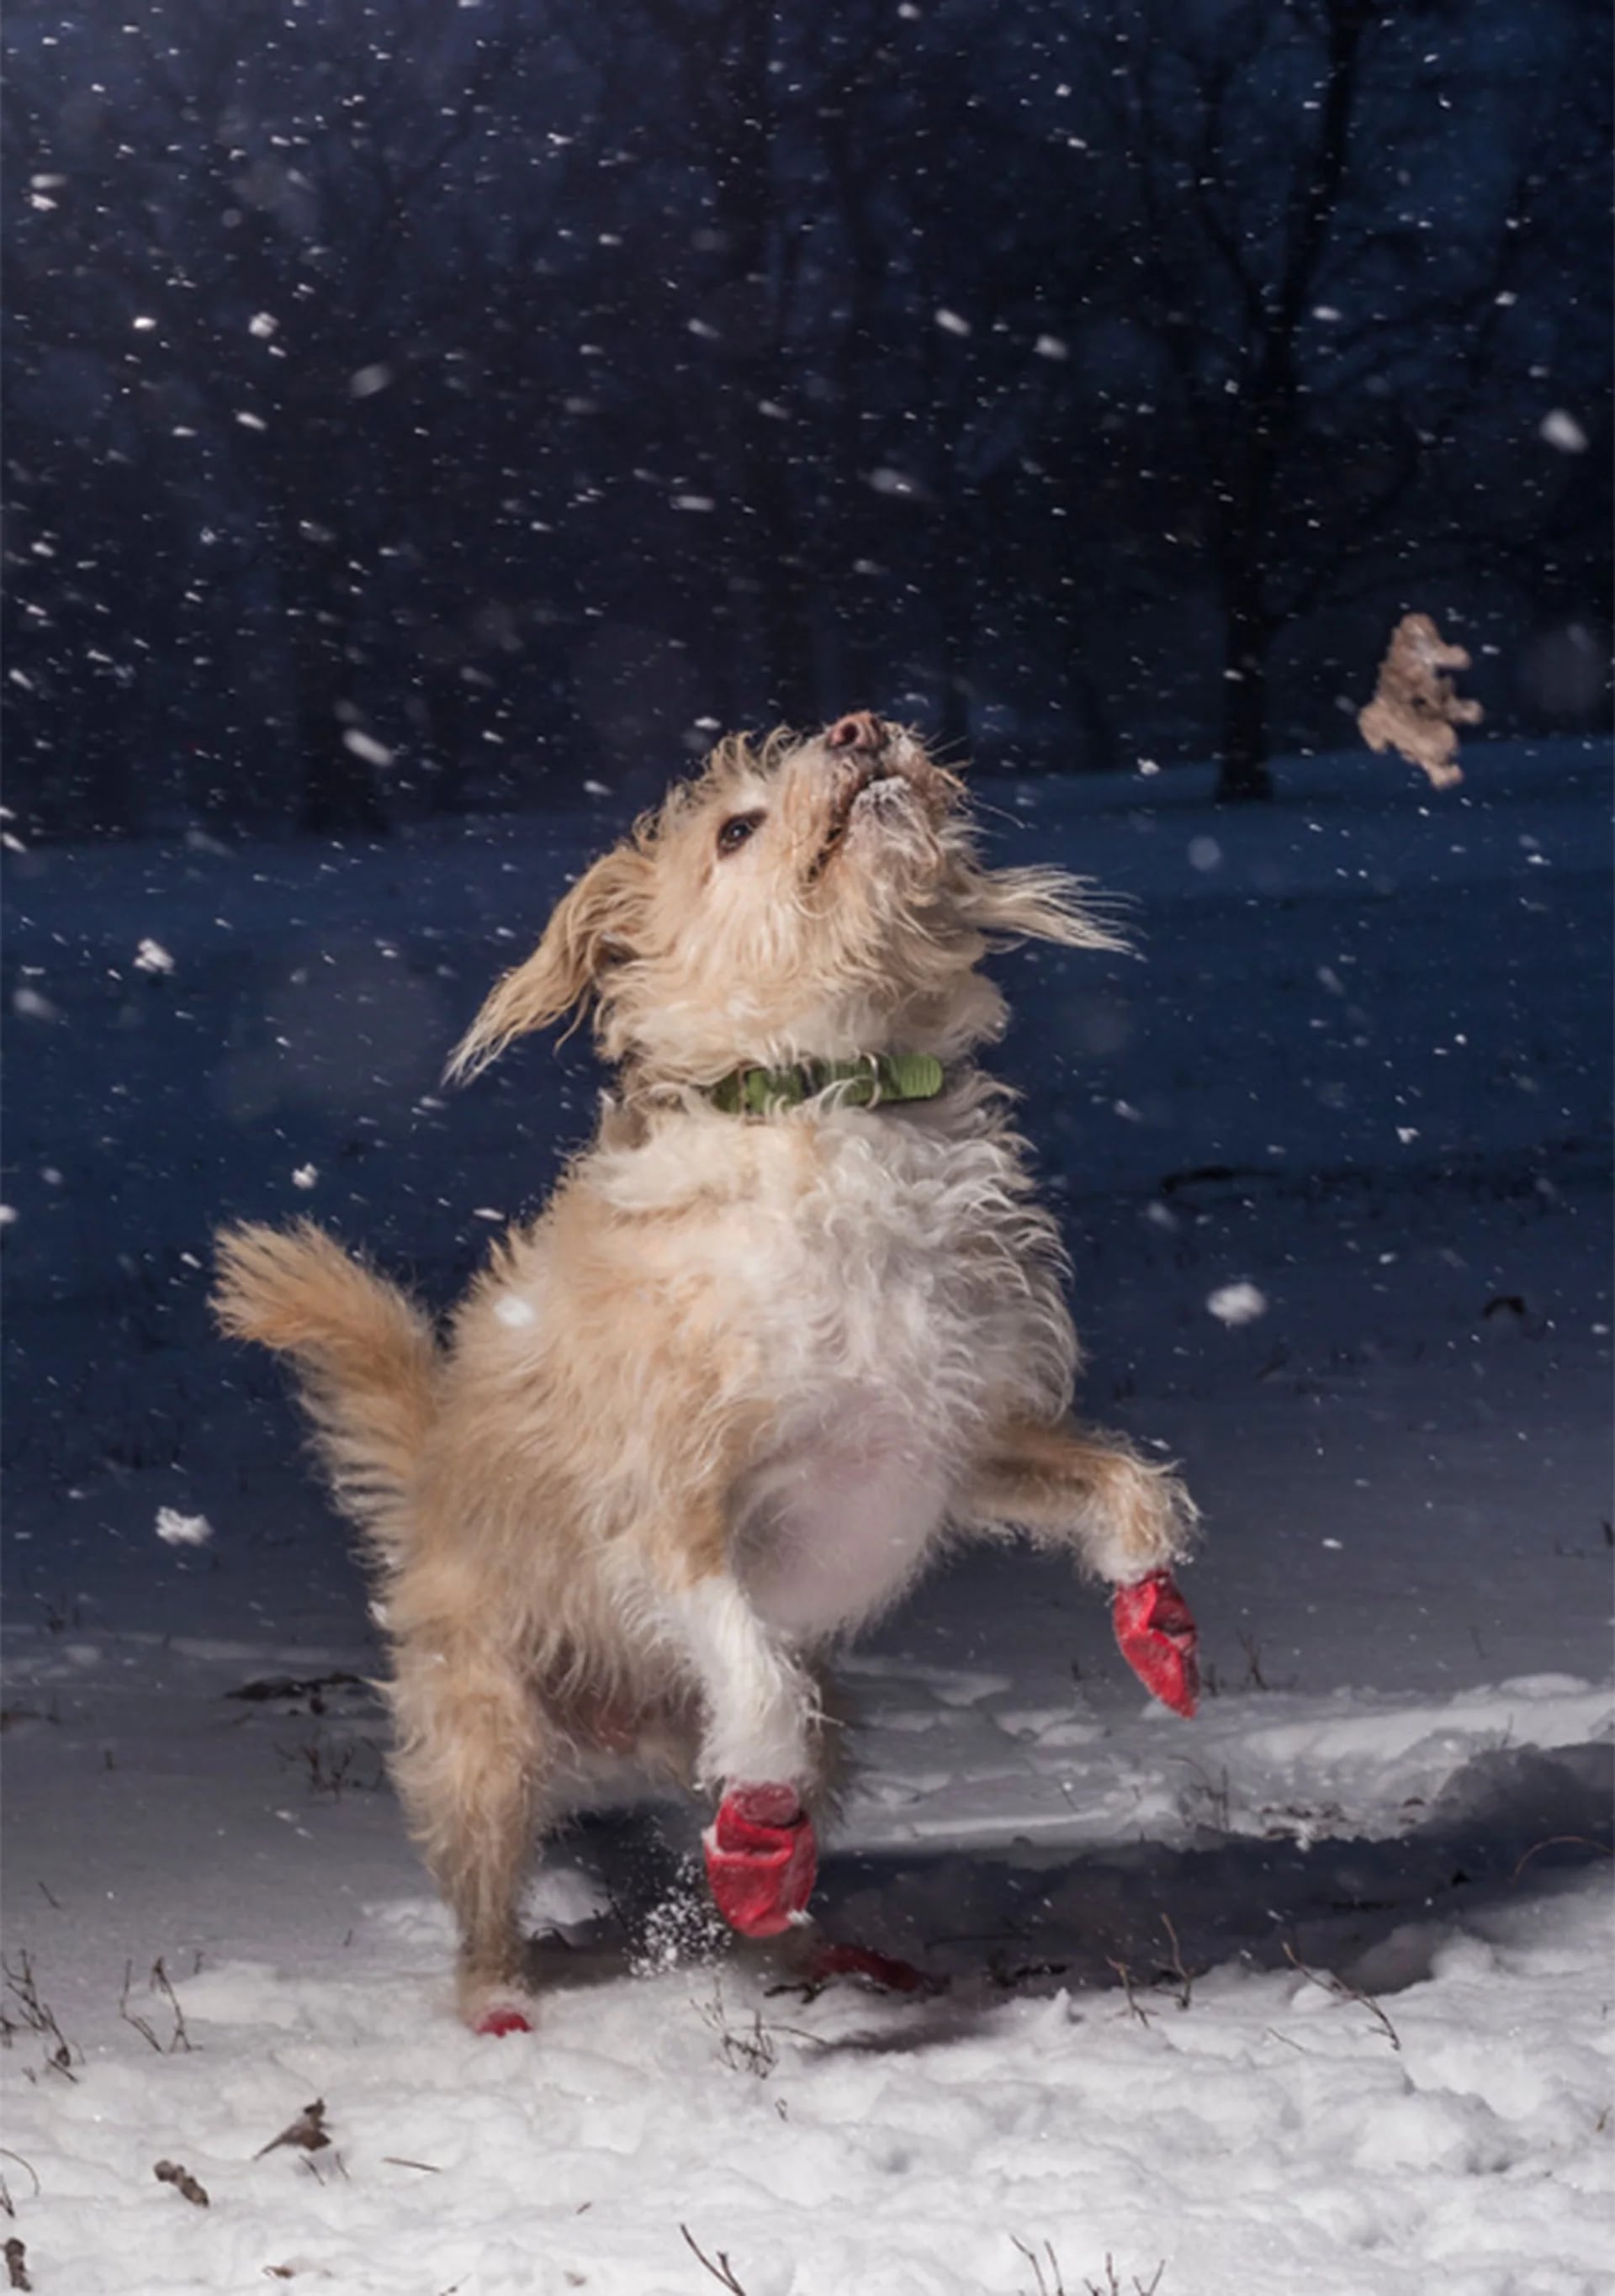 Categoría Amo a los perros porque…. Pippin, una mezcla de terrier, adoptada en 2010, juega en la nieve y fue captada por Julian Gottfired, de 15 años, en Chicago